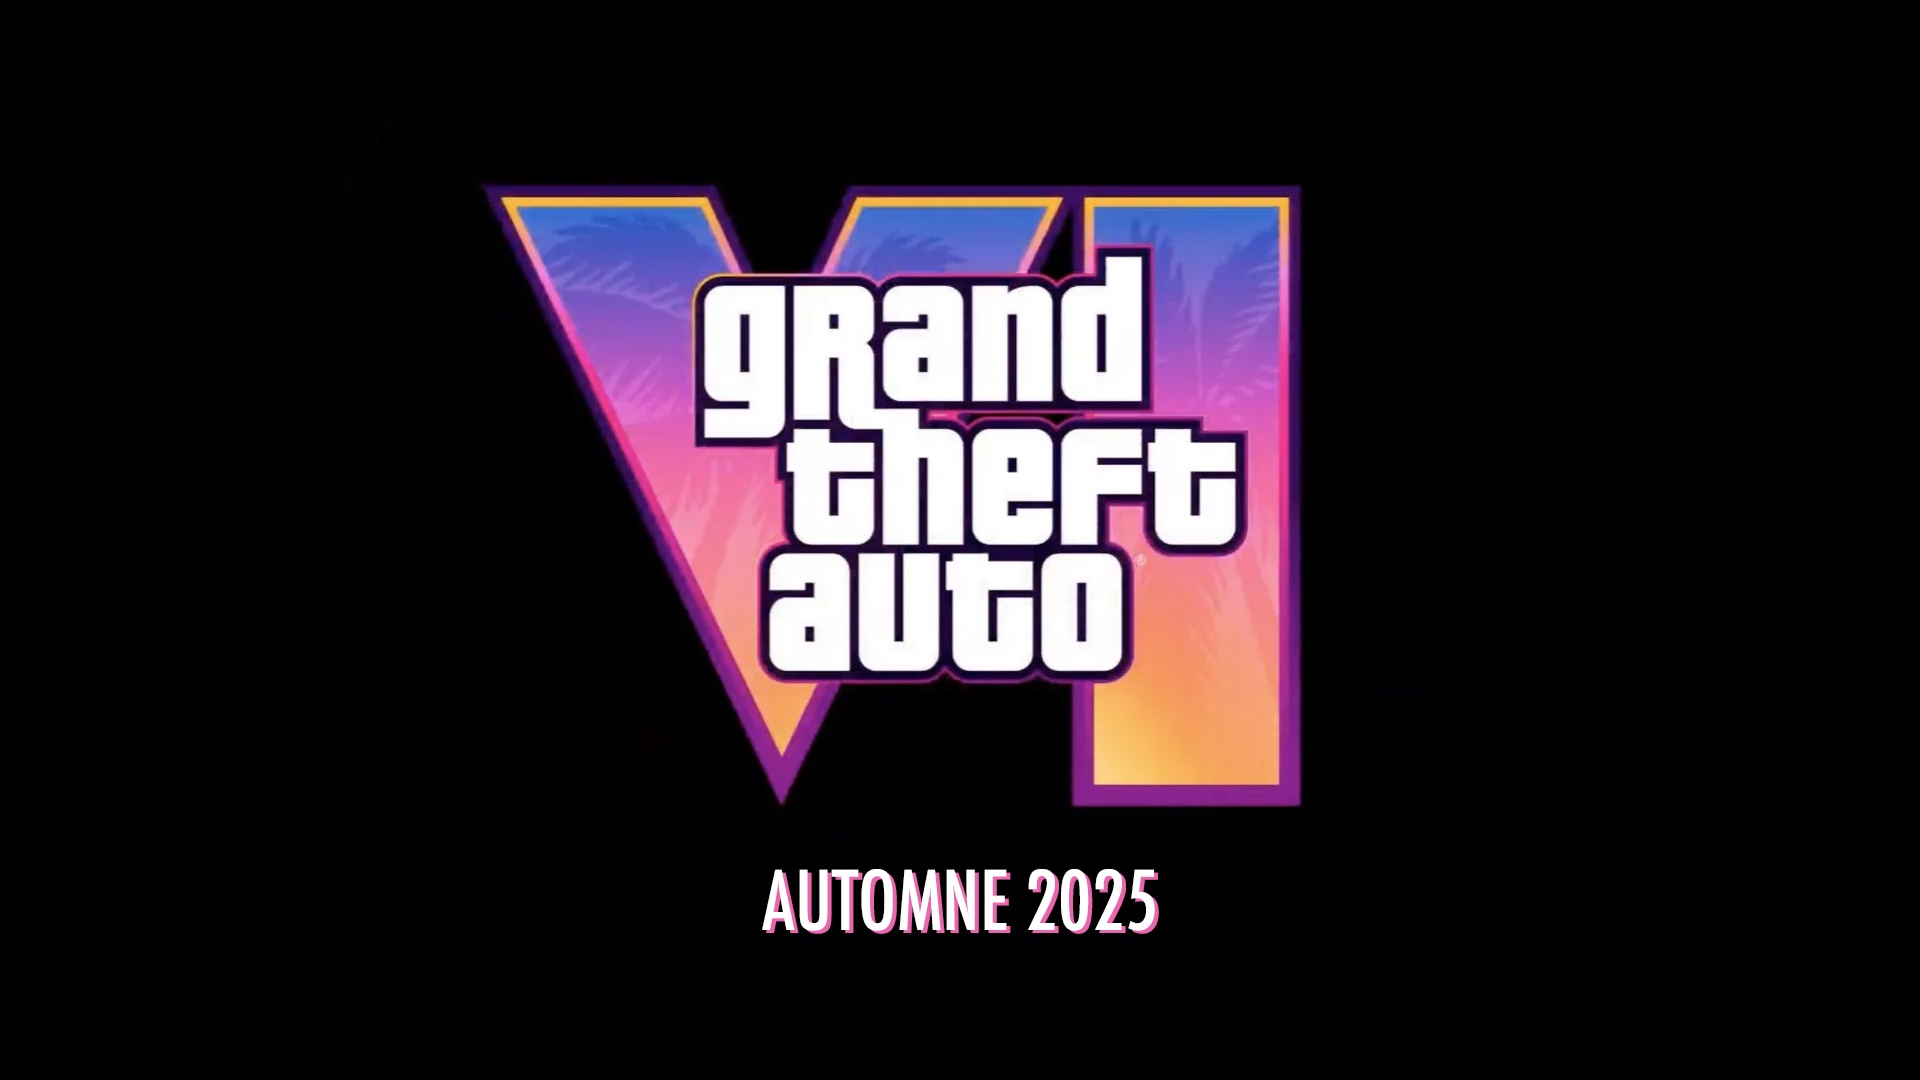 Ufficialmente: il rilascio di GTA 6 è previsto nell’autunno 2025 su PS5 e Xbox Series